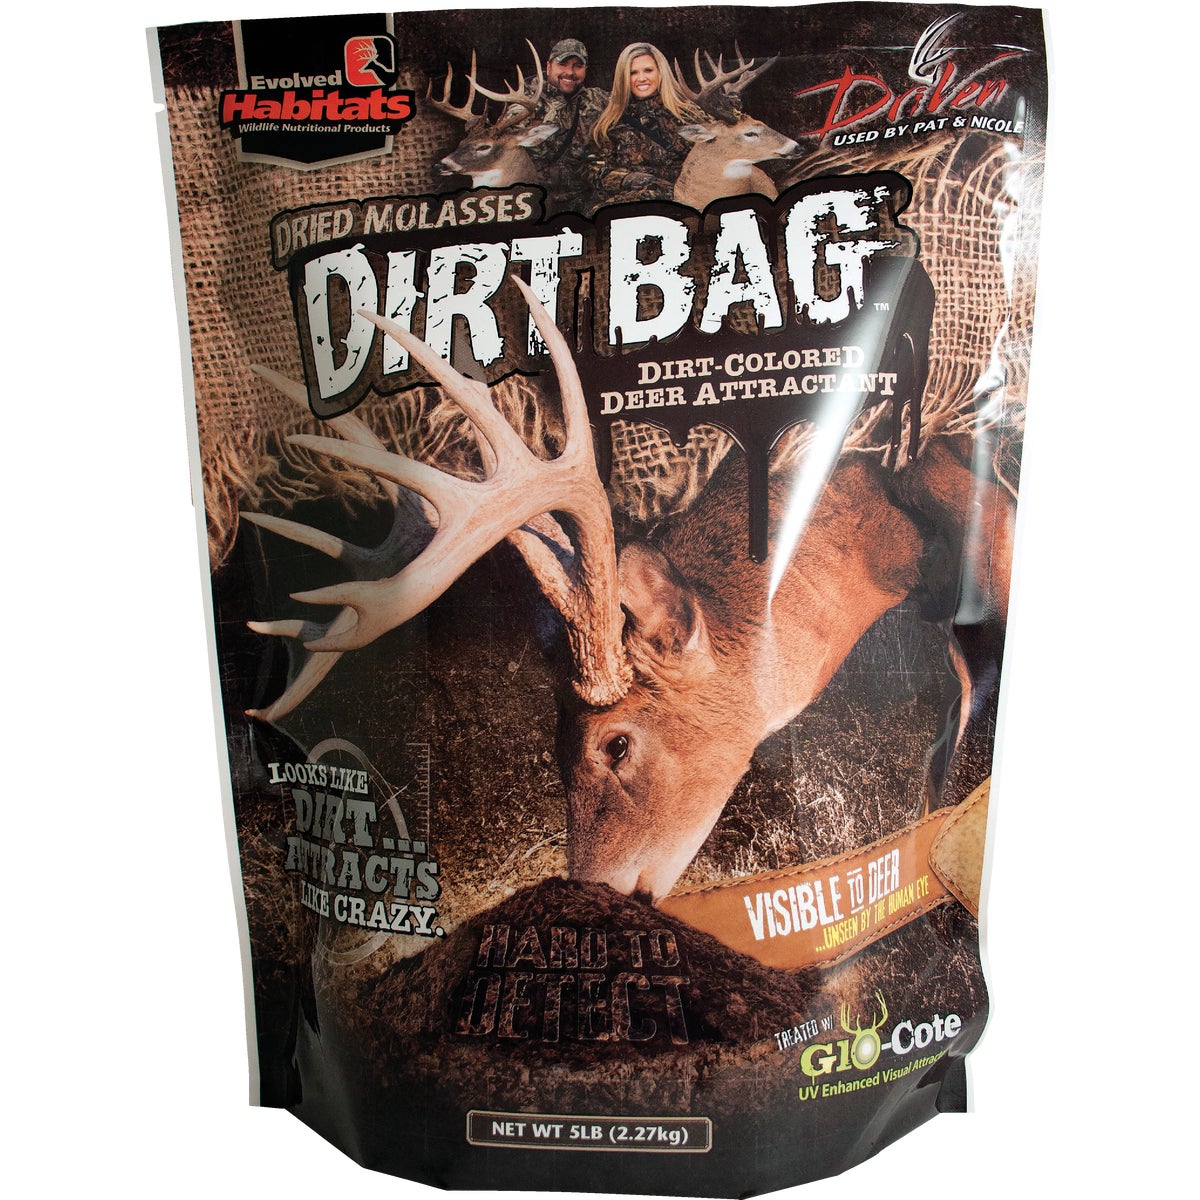 Item 703793, Dirt bag molasses flavored deer attractant.